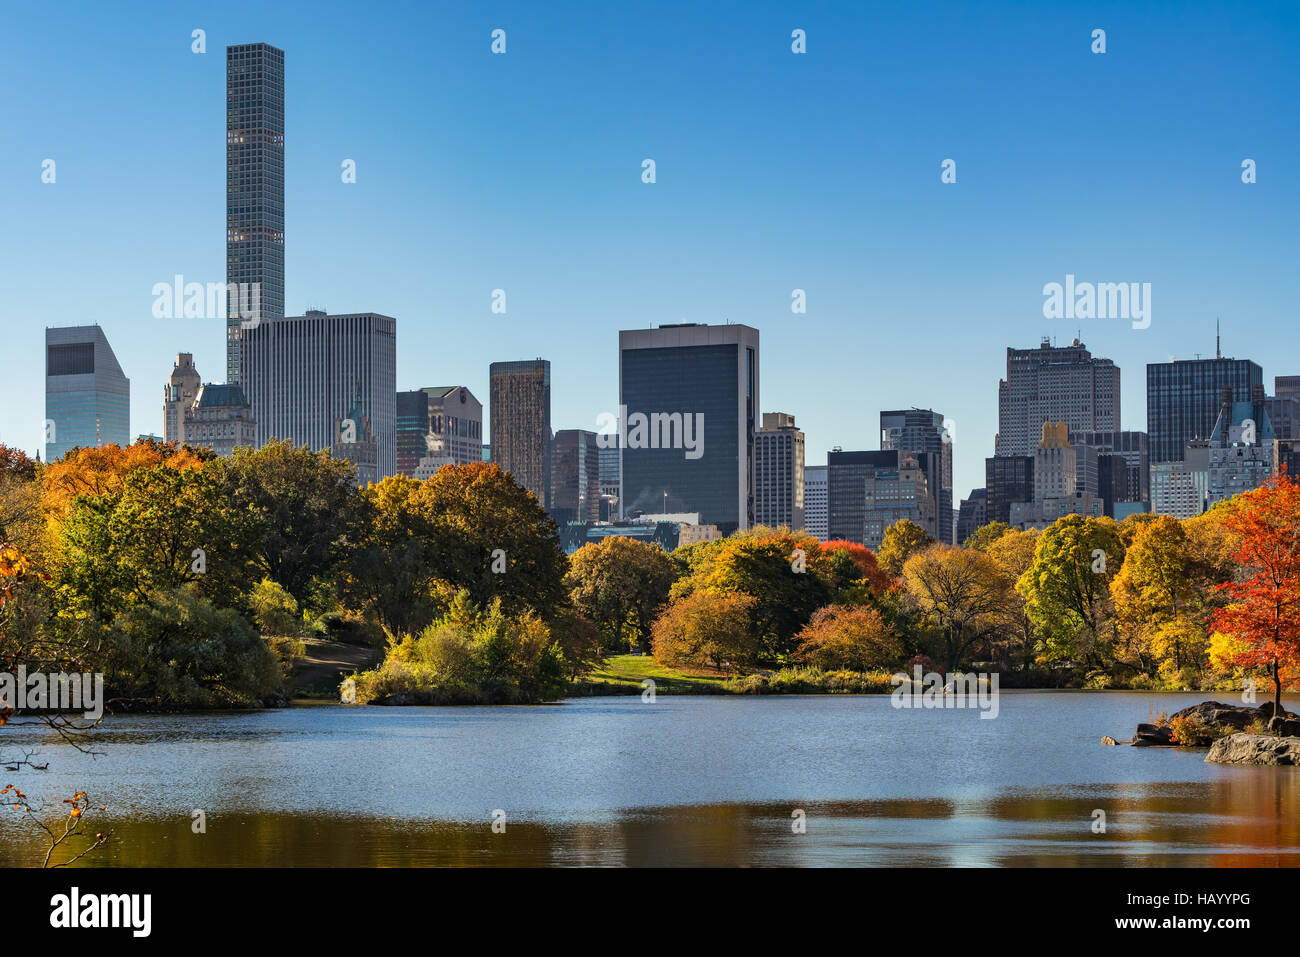 Automne dans Central Park au lac avec Midtown gratte-ciel. Matin voir avec feuillage automne coloré. Manhattan, New York City Banque D'Images